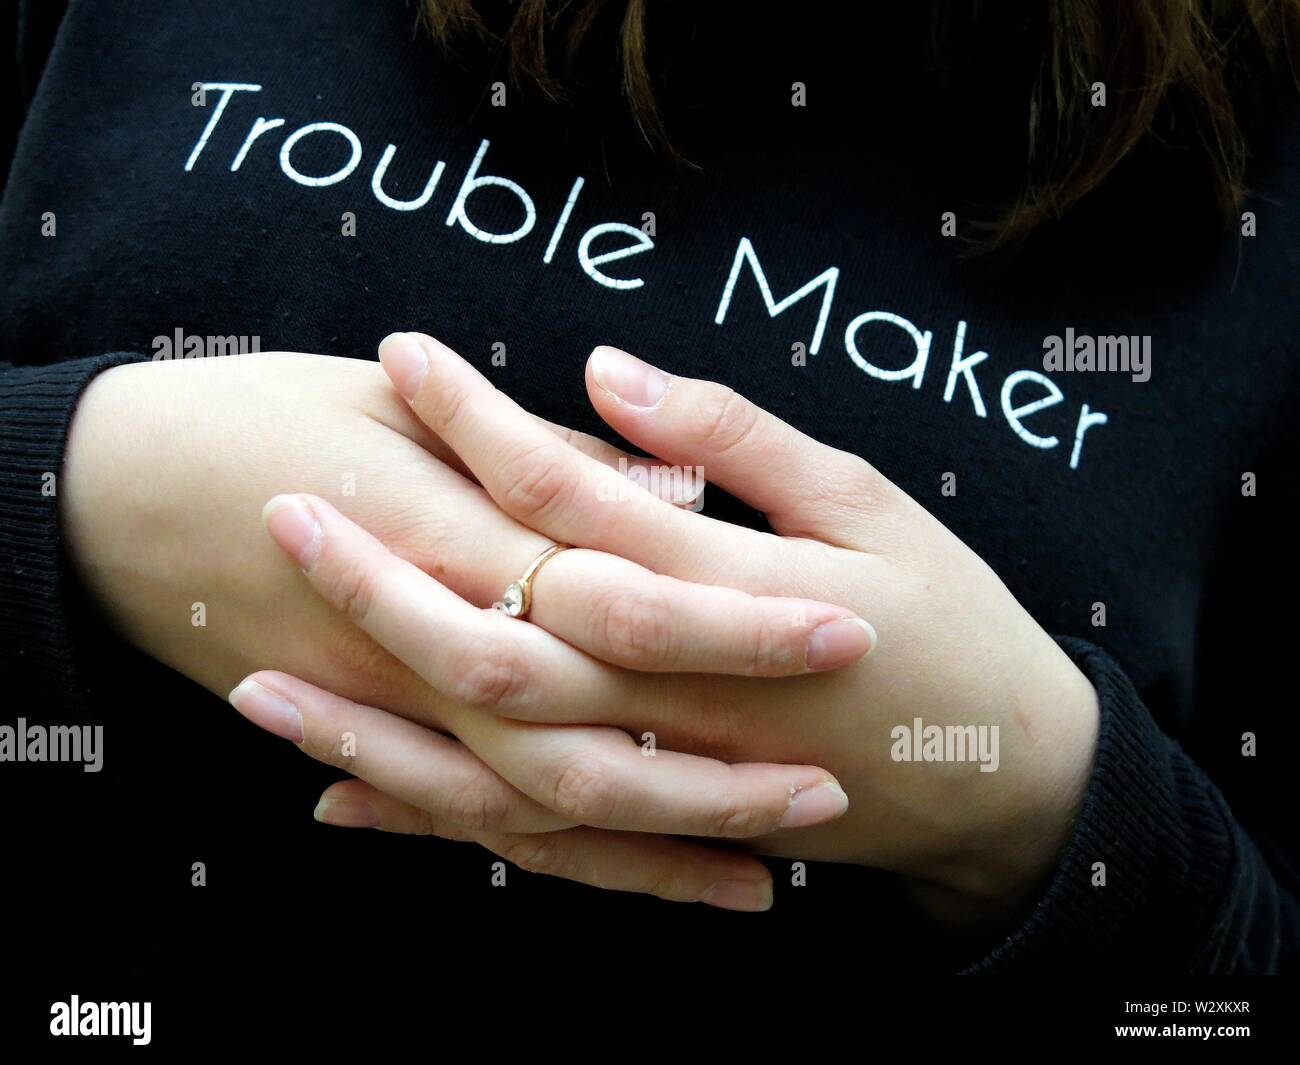 Ragazza adolescente con mani incrociate indossando "trouble maker" ponticello. (Giustapposizione di sentimenti durante l adolescenza). Foto Stock